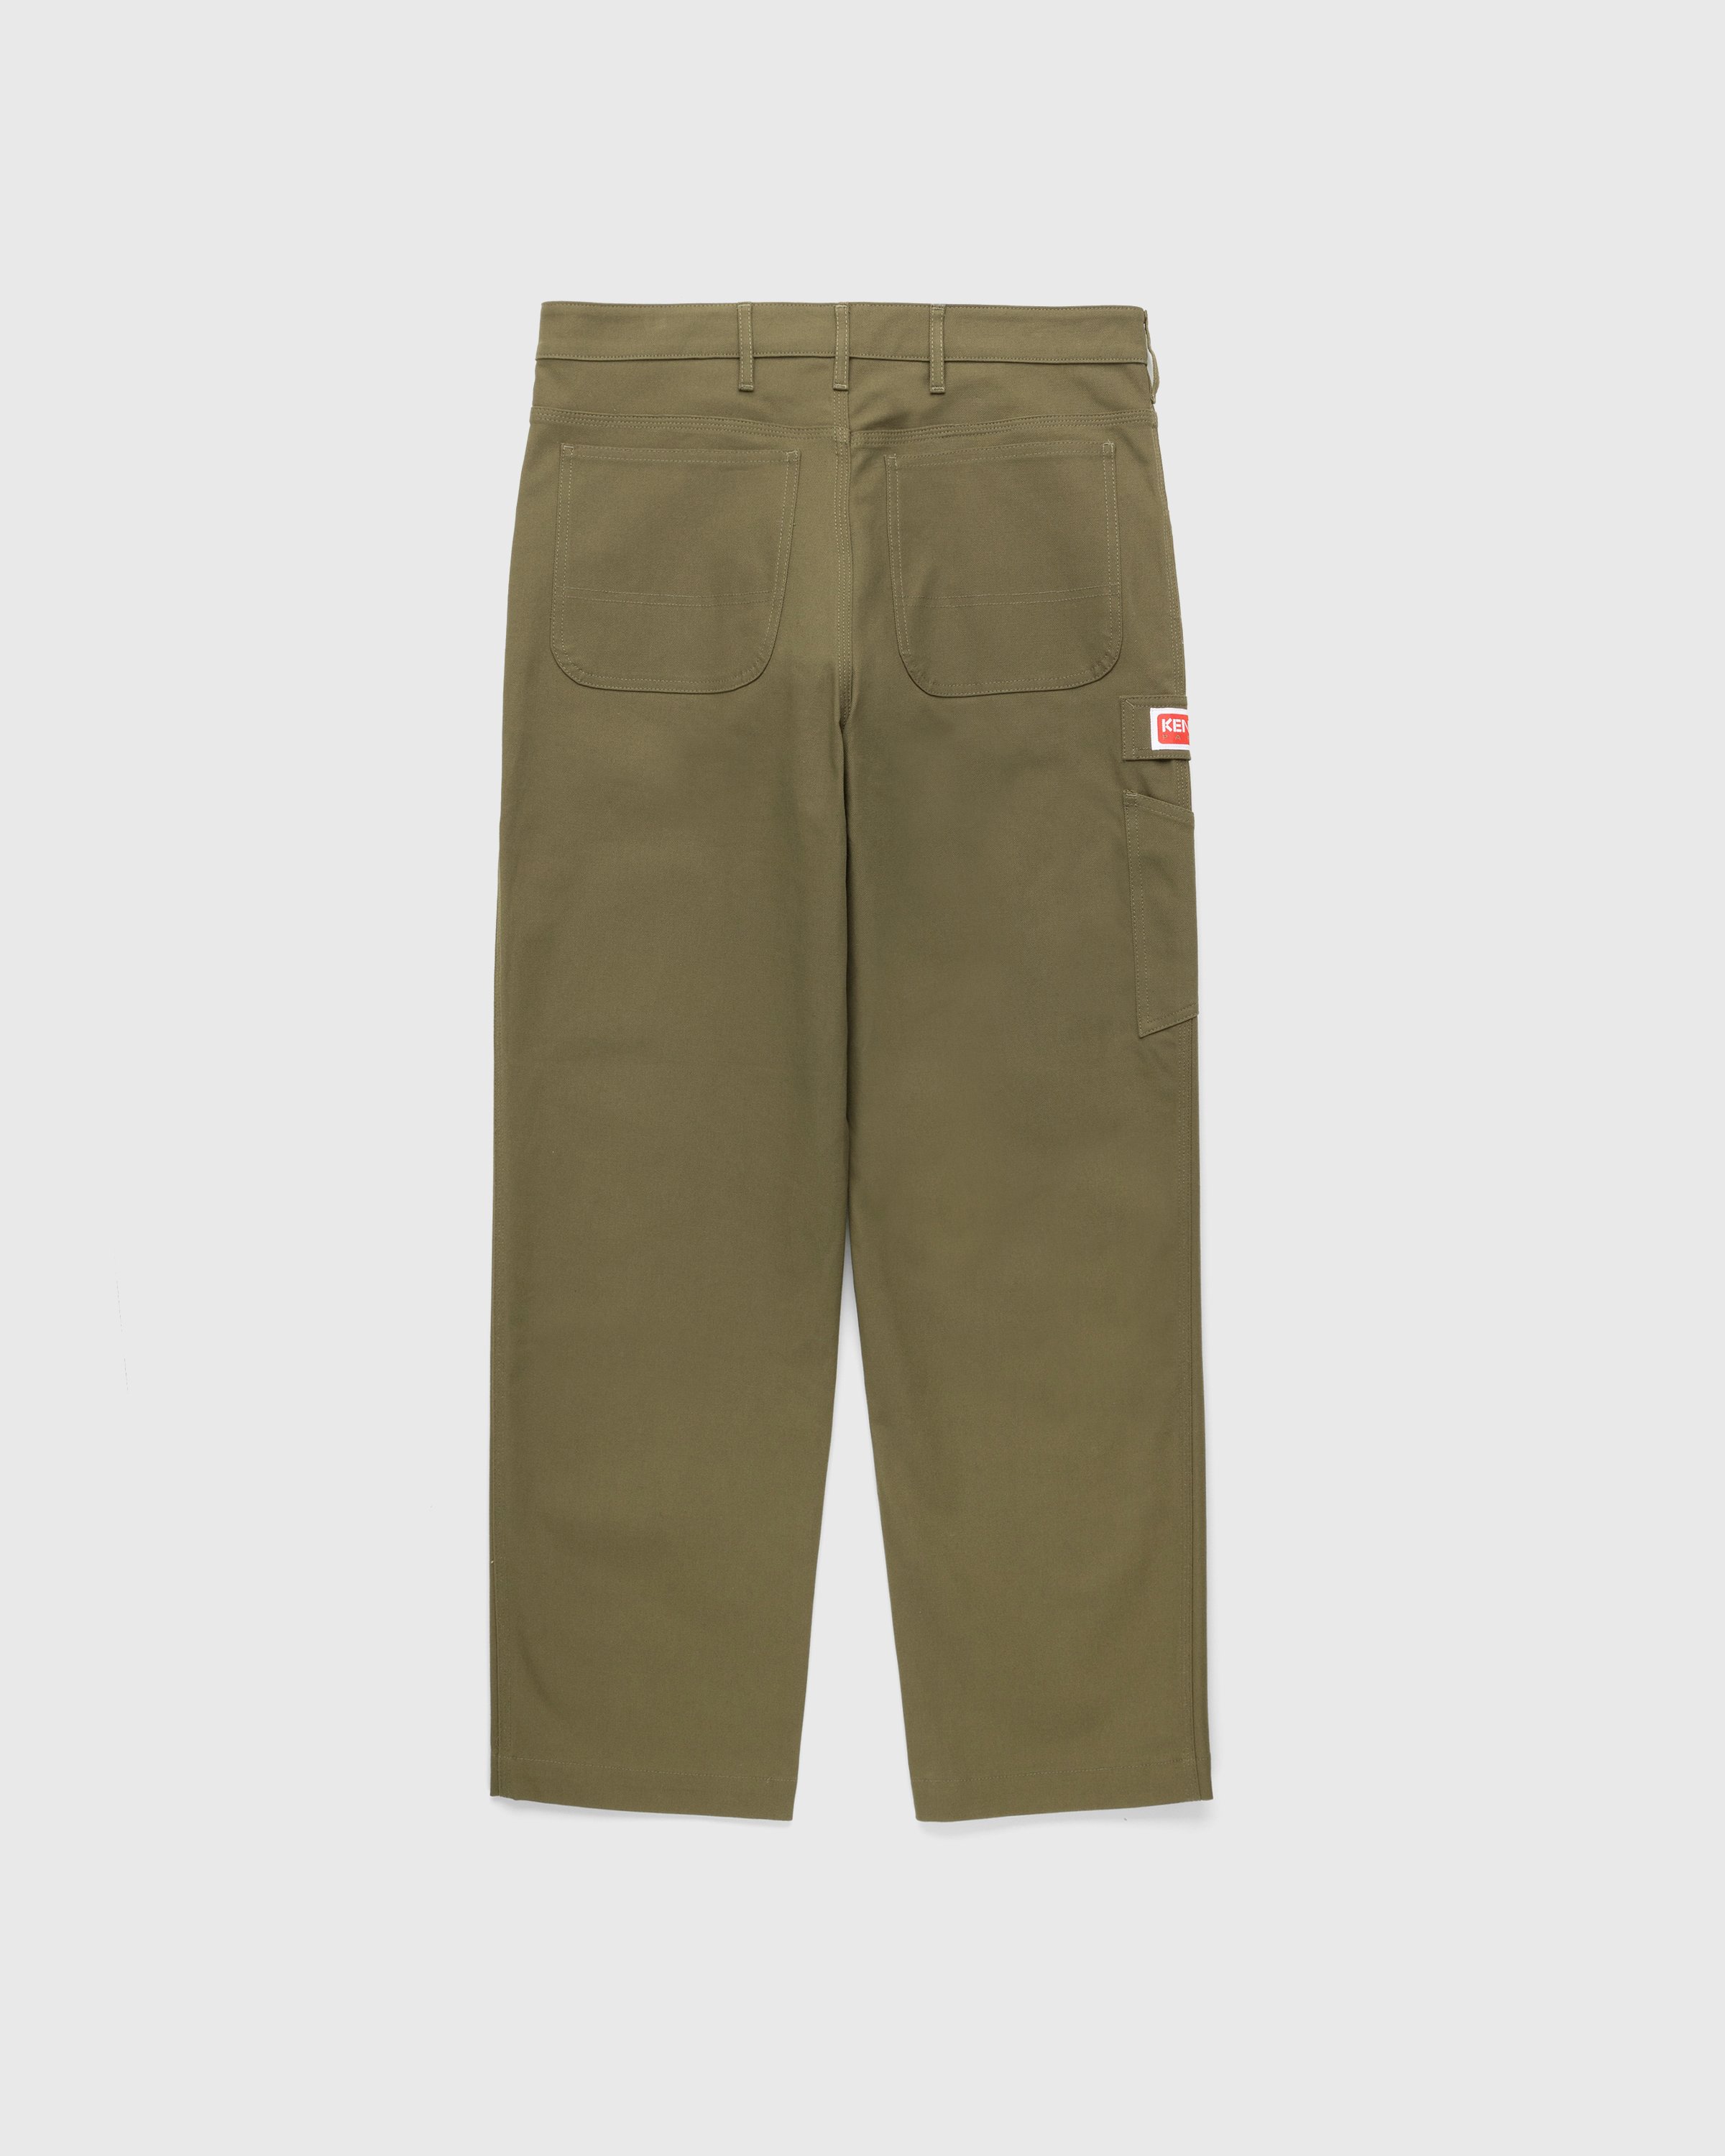 Kenzo - Carpenter Pants Dark Khaki - Clothing - Green - Image 2